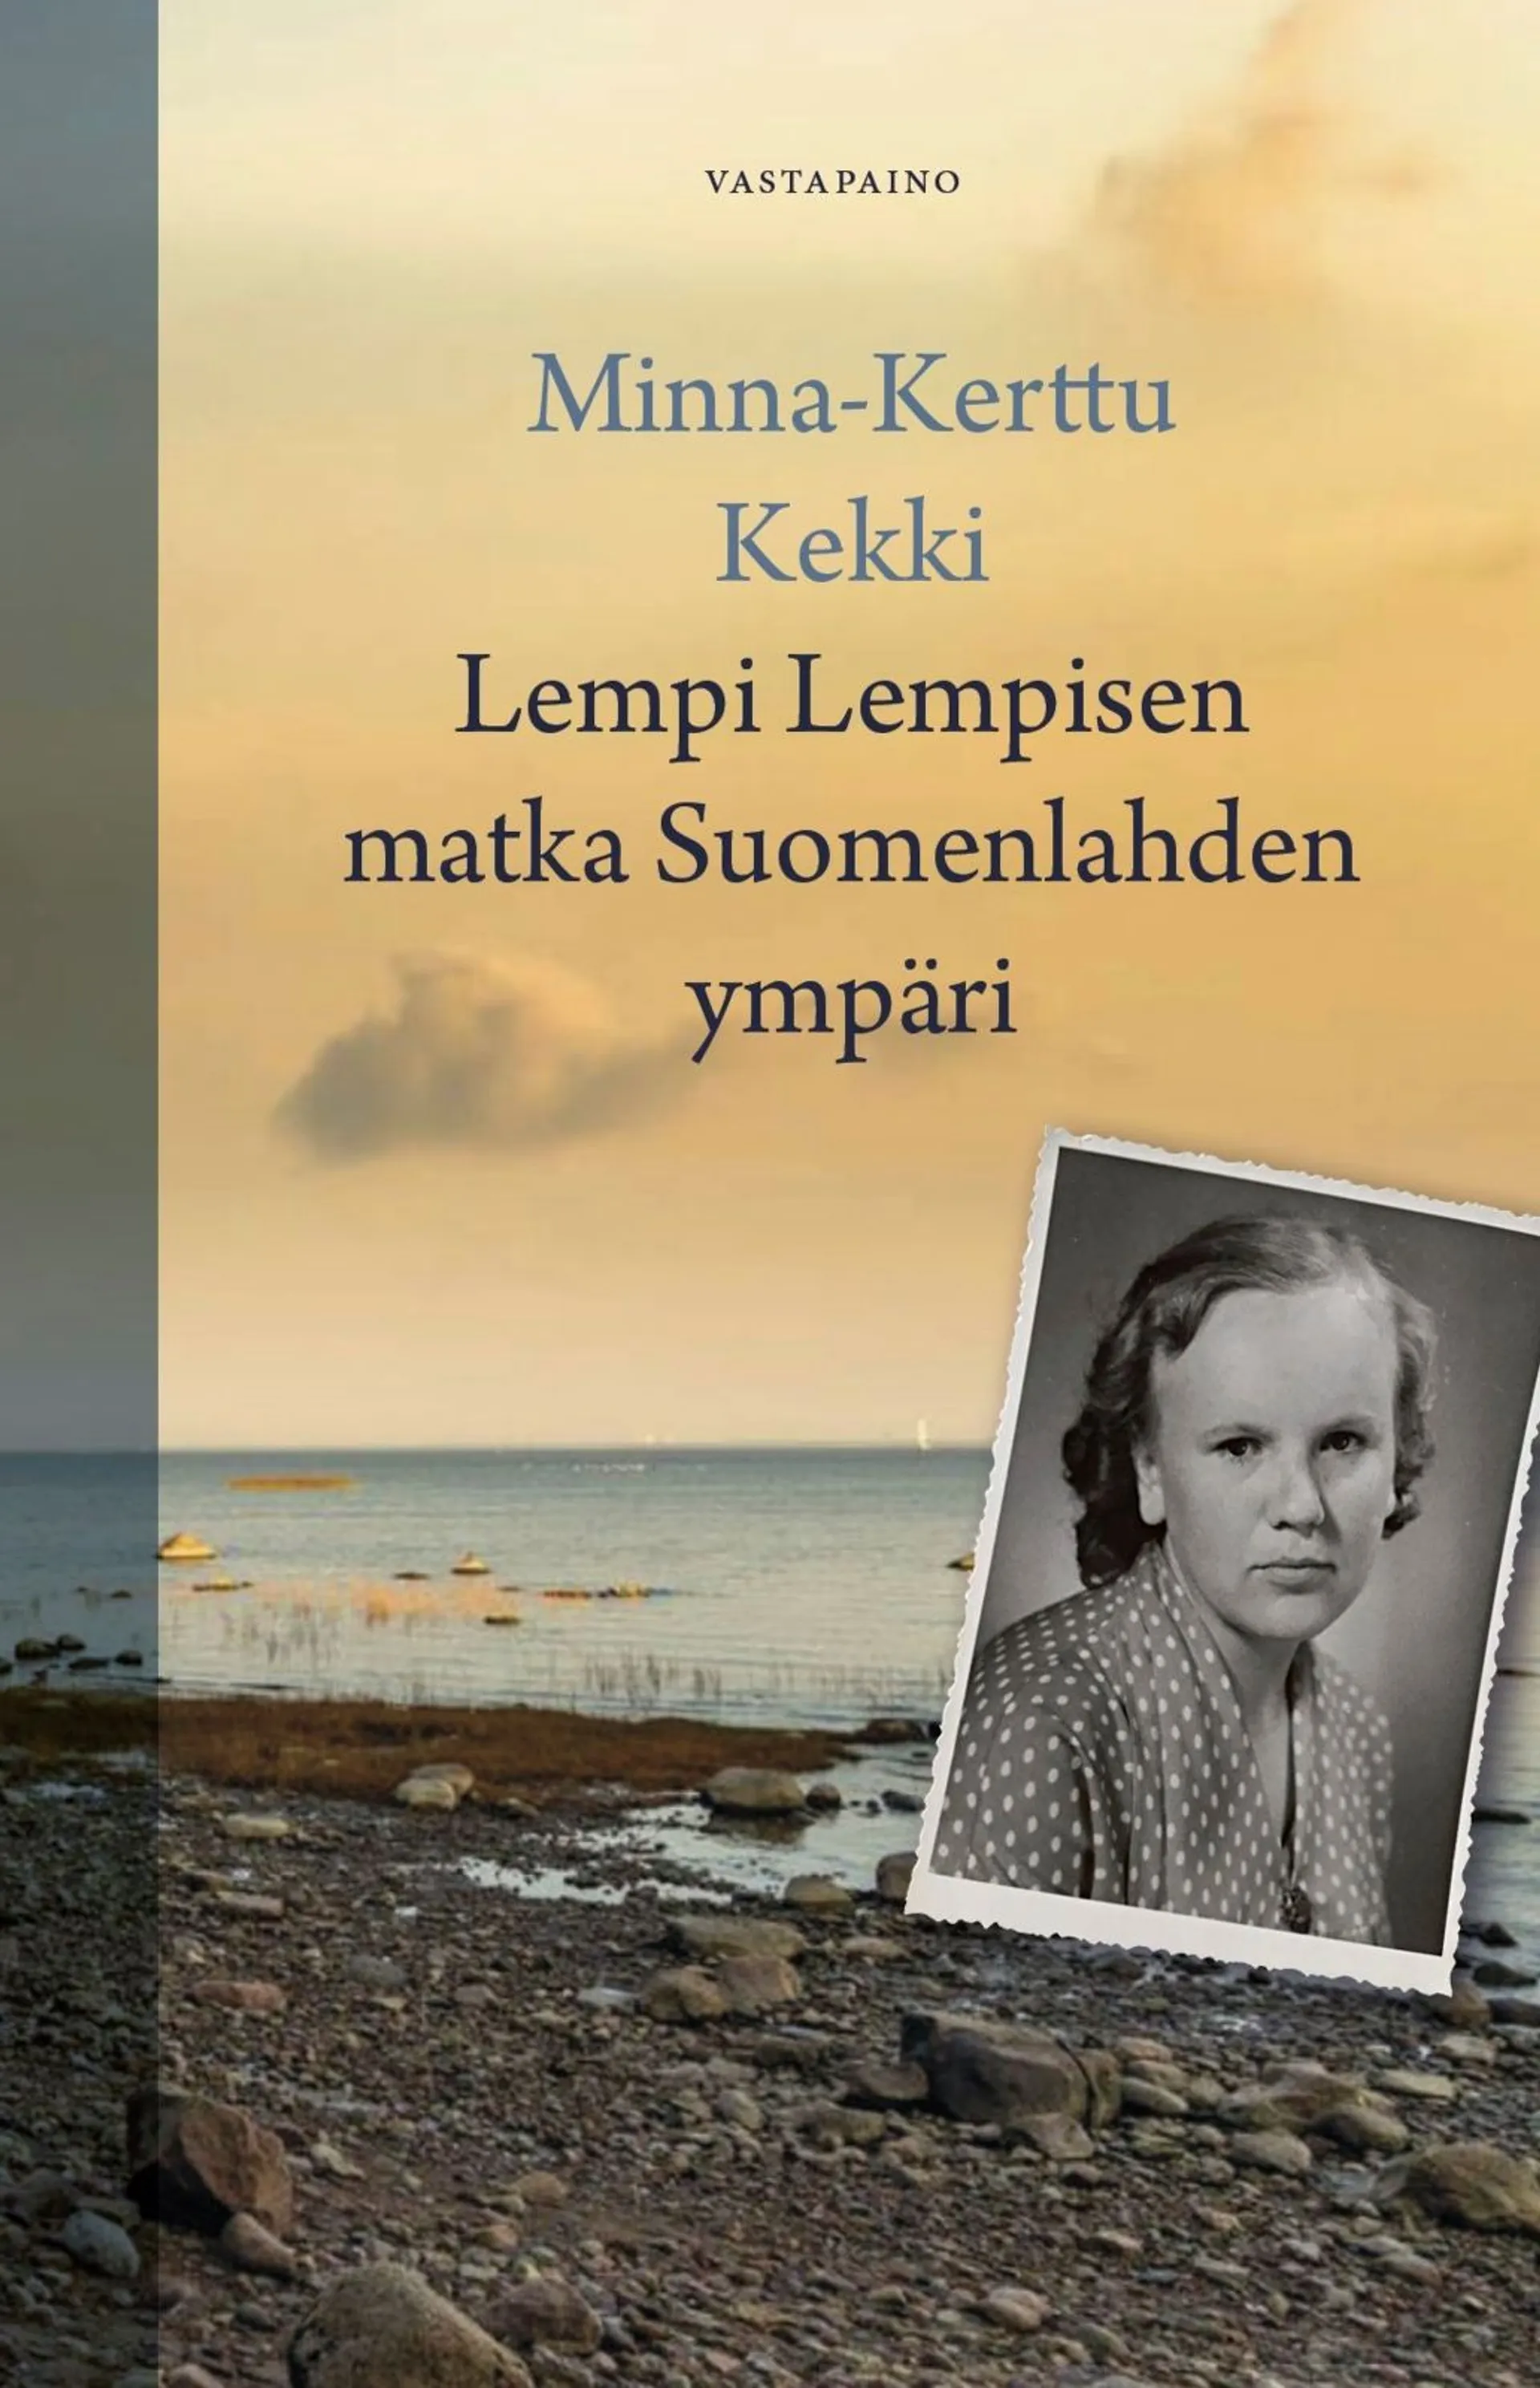 Kekki, Lempi Lempisen matka Suomenlahden ympäri